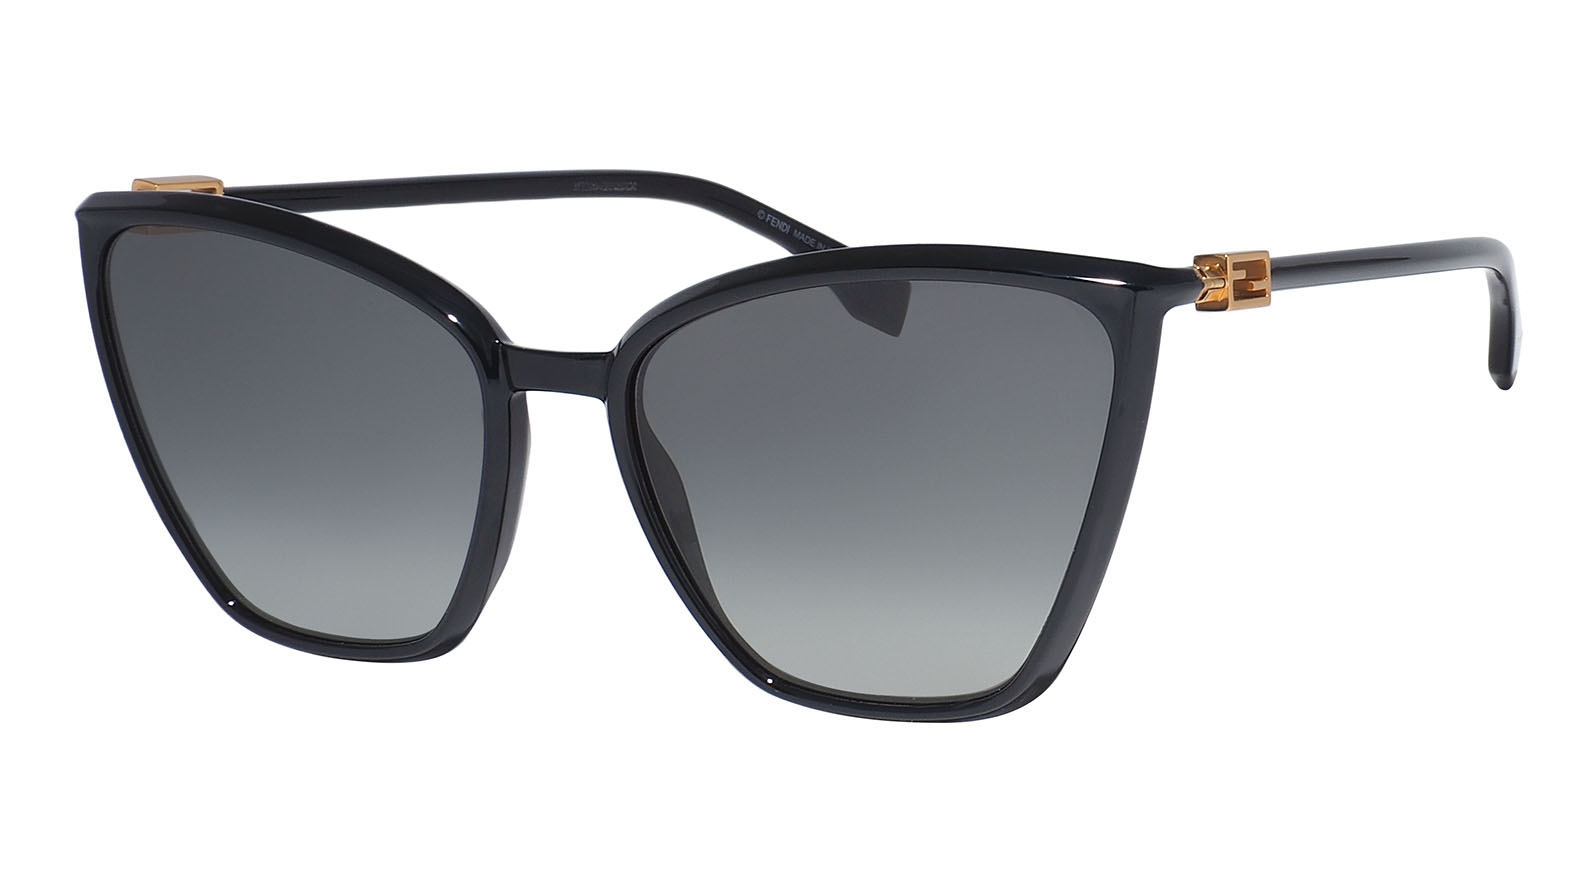 Fendi 433-G-S 807 lukky солнцезащитные очки круглые с декором